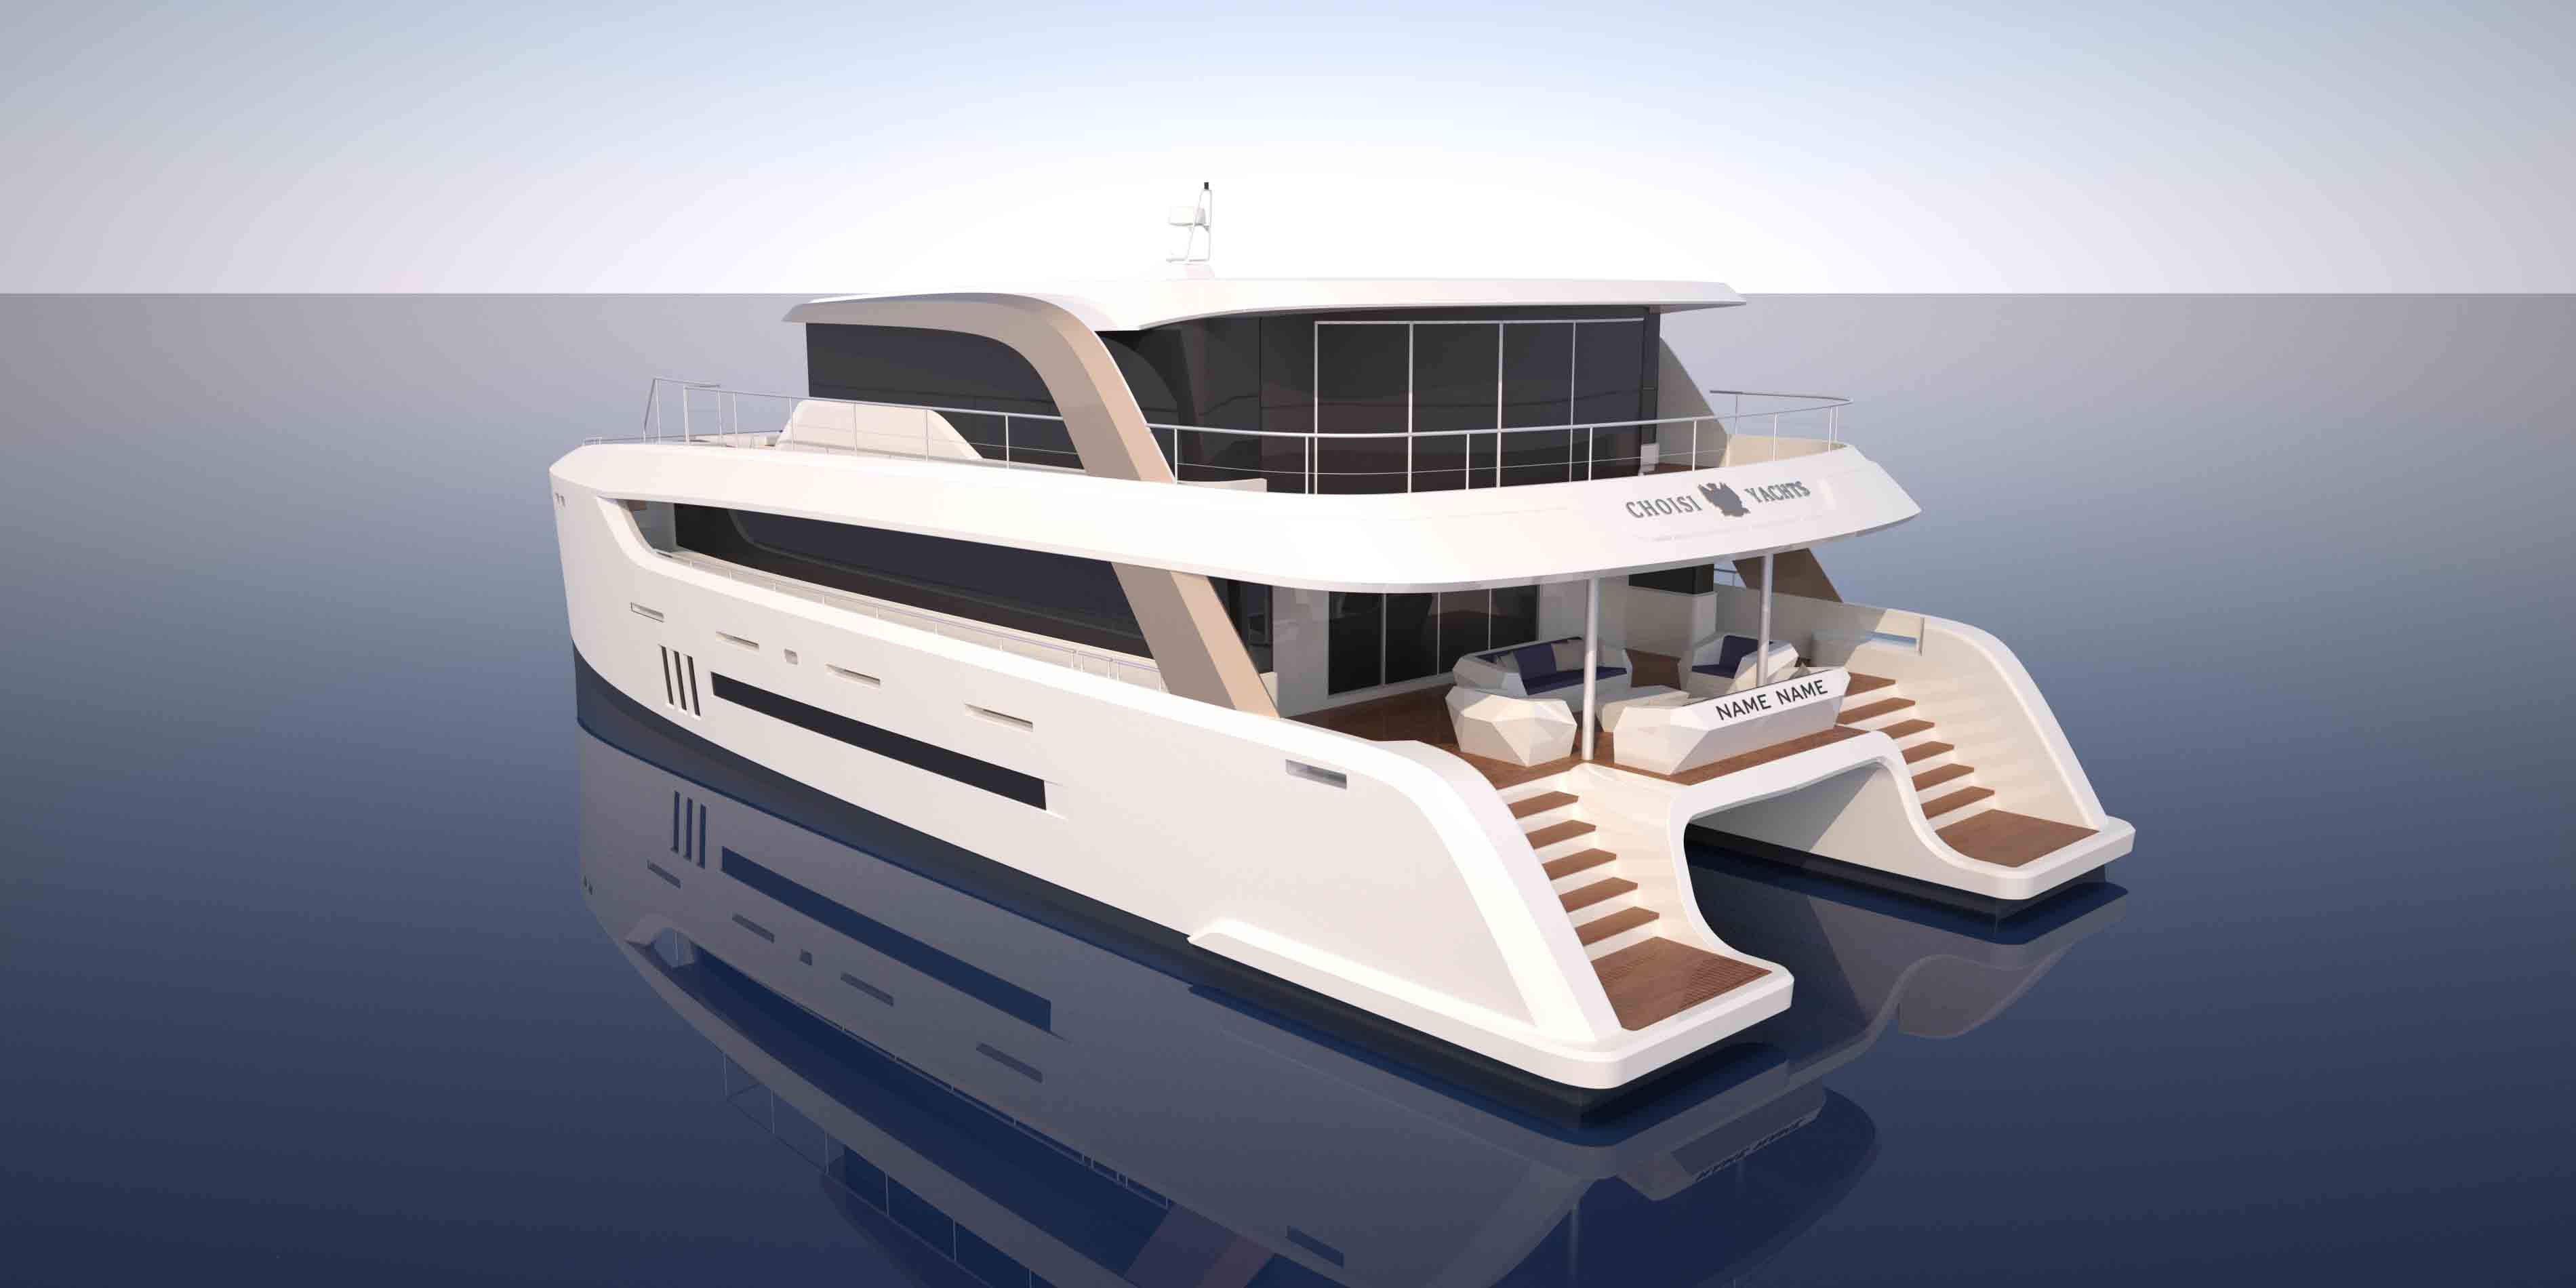 【海洋船舶】Smit拖轮船3D设计图纸 SolidWorks2014设计 附STEP格式_船舶_海洋-仿真秀干货文章